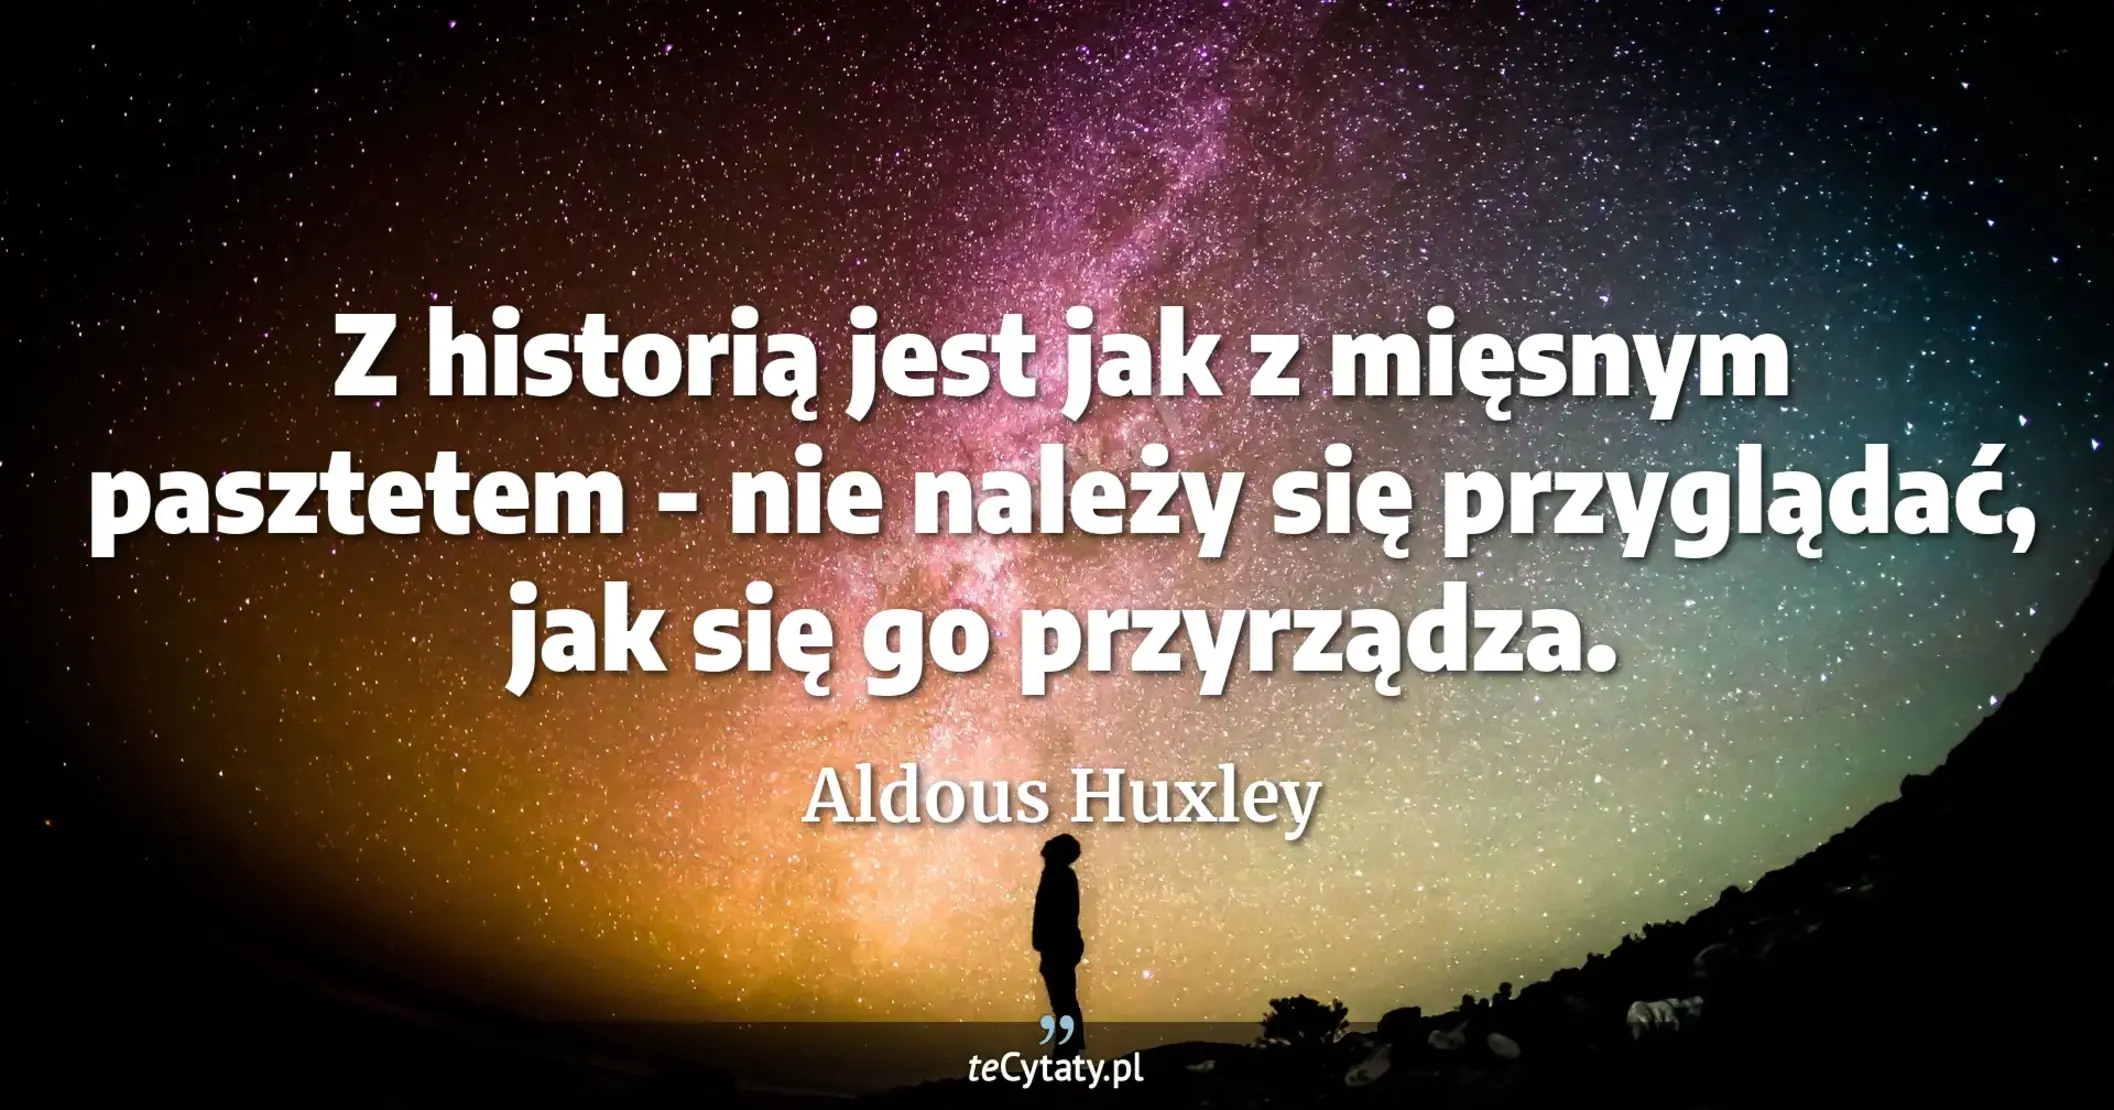 Z historią jest jak z mięsnym pasztetem - nie należy się przyglądać, jak się go przyrządza. - Aldous Huxley